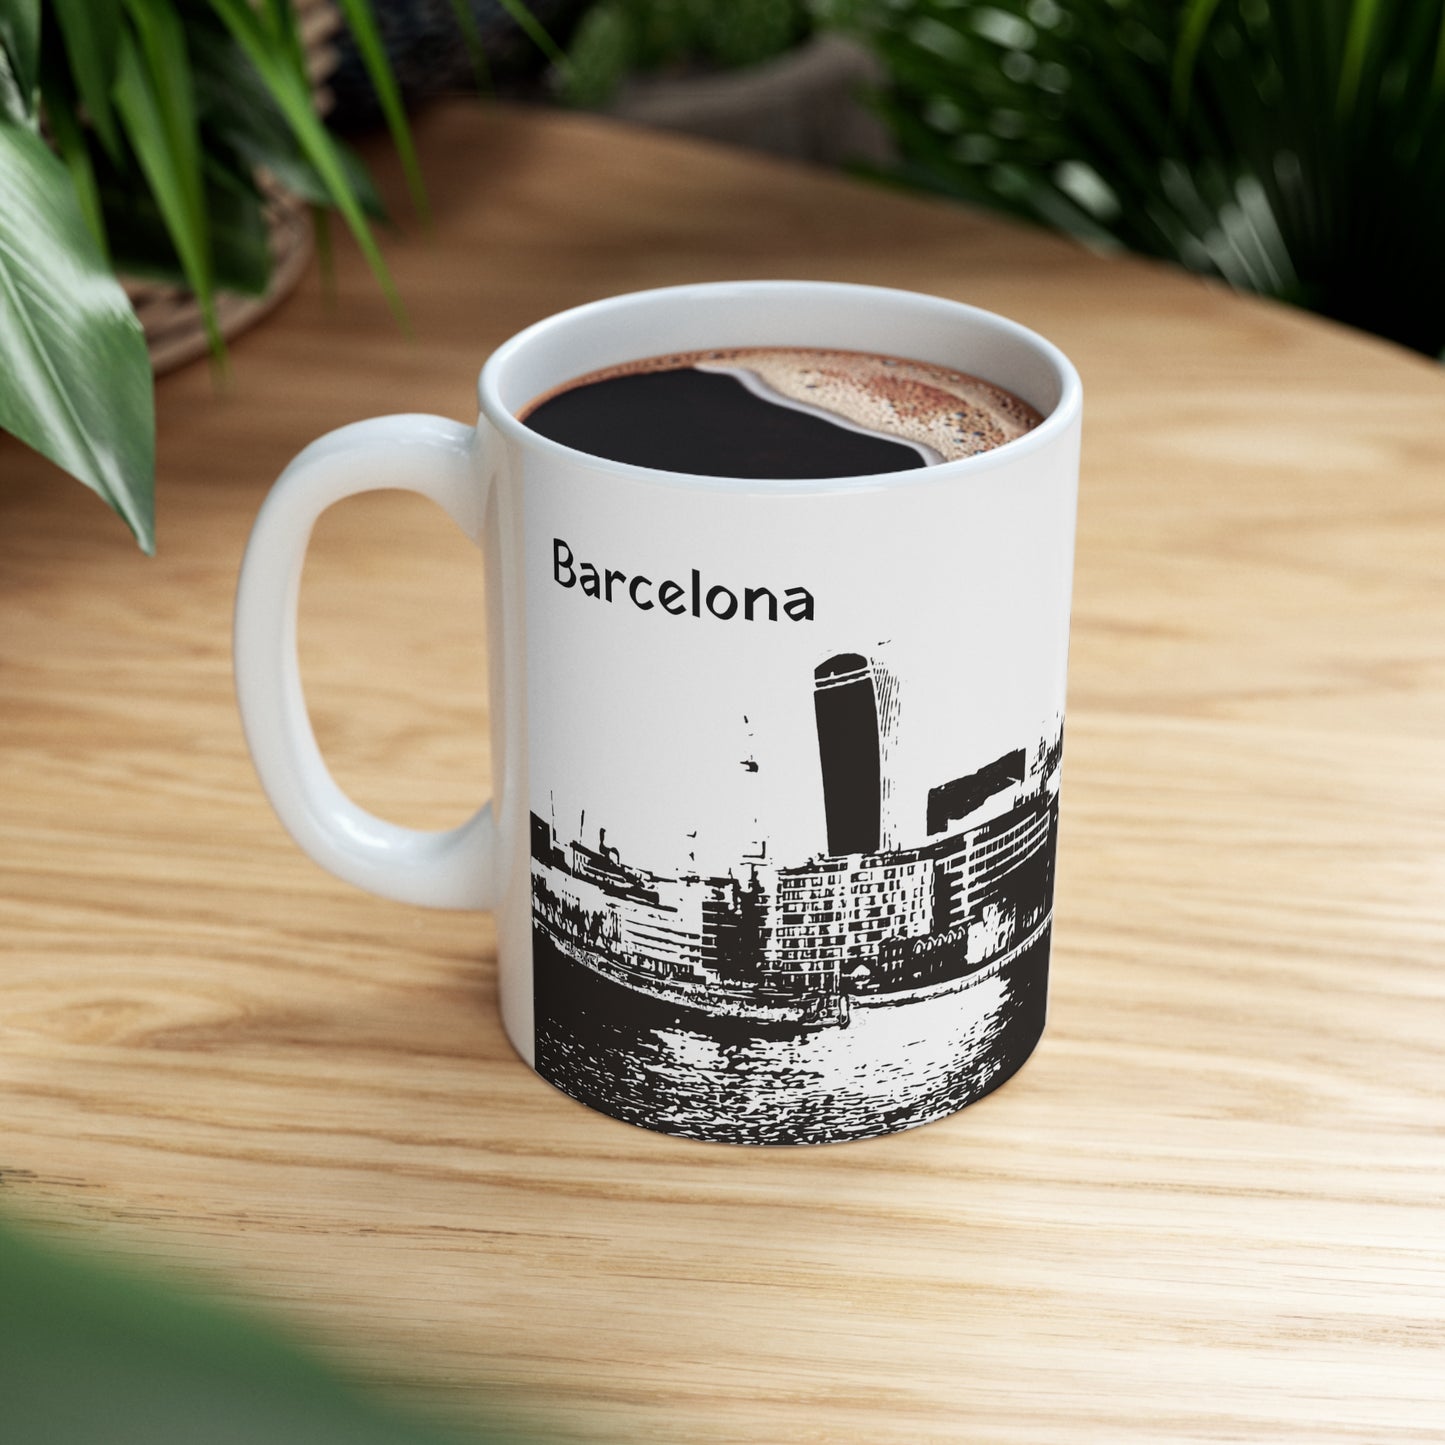 Barcelona-3 Ceramic Mug 11oz